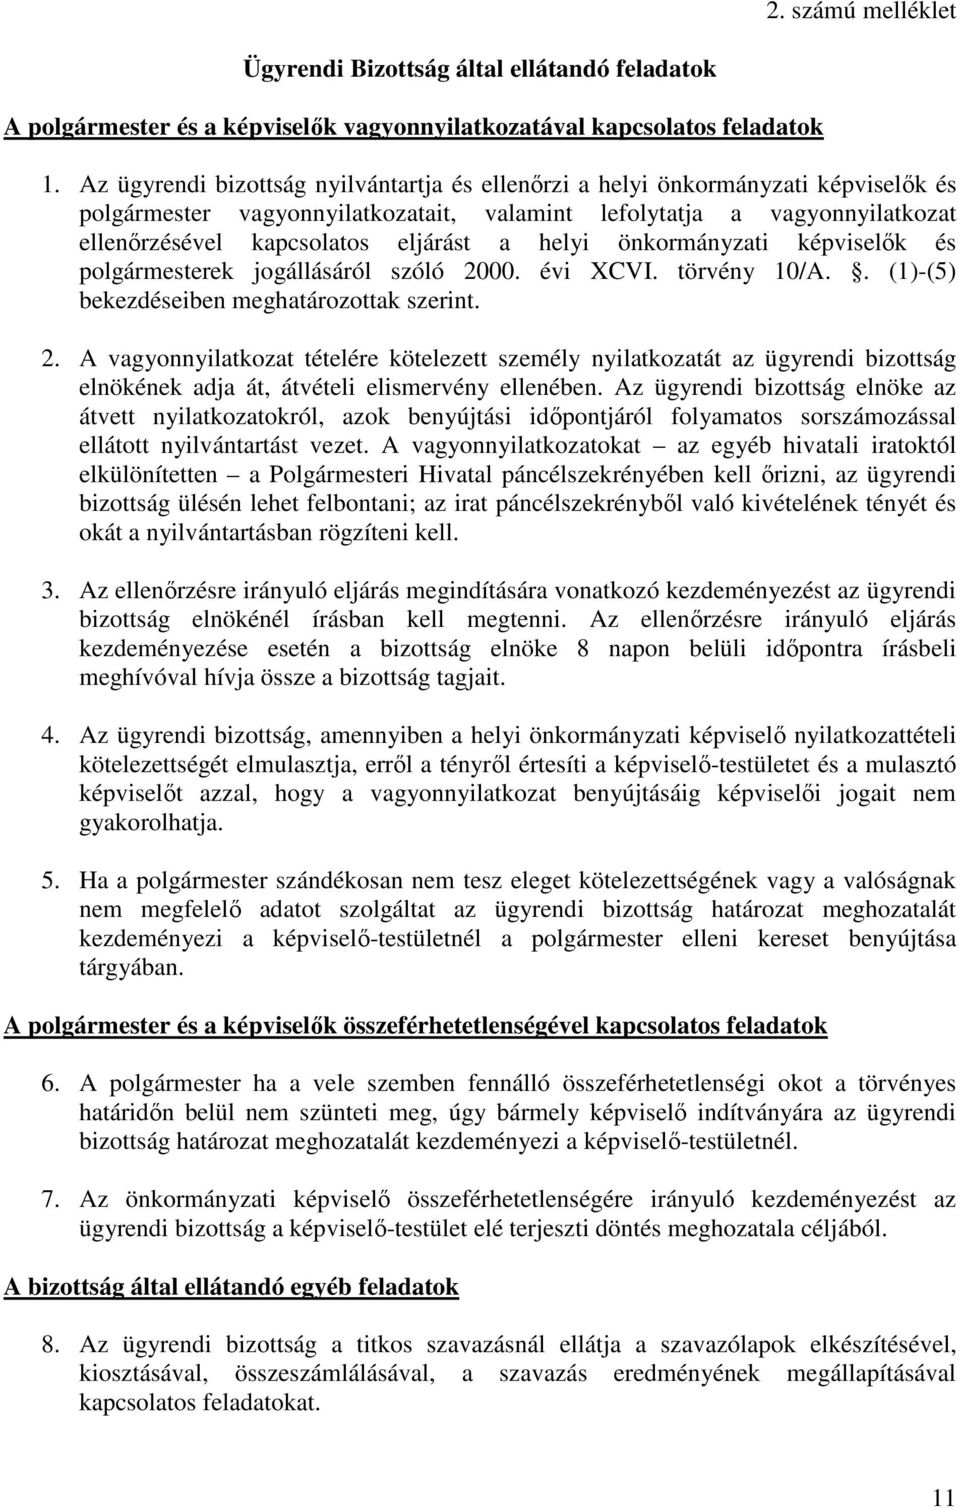 helyi önkormányzati képviselők és polgármesterek jogállásáról szóló 20